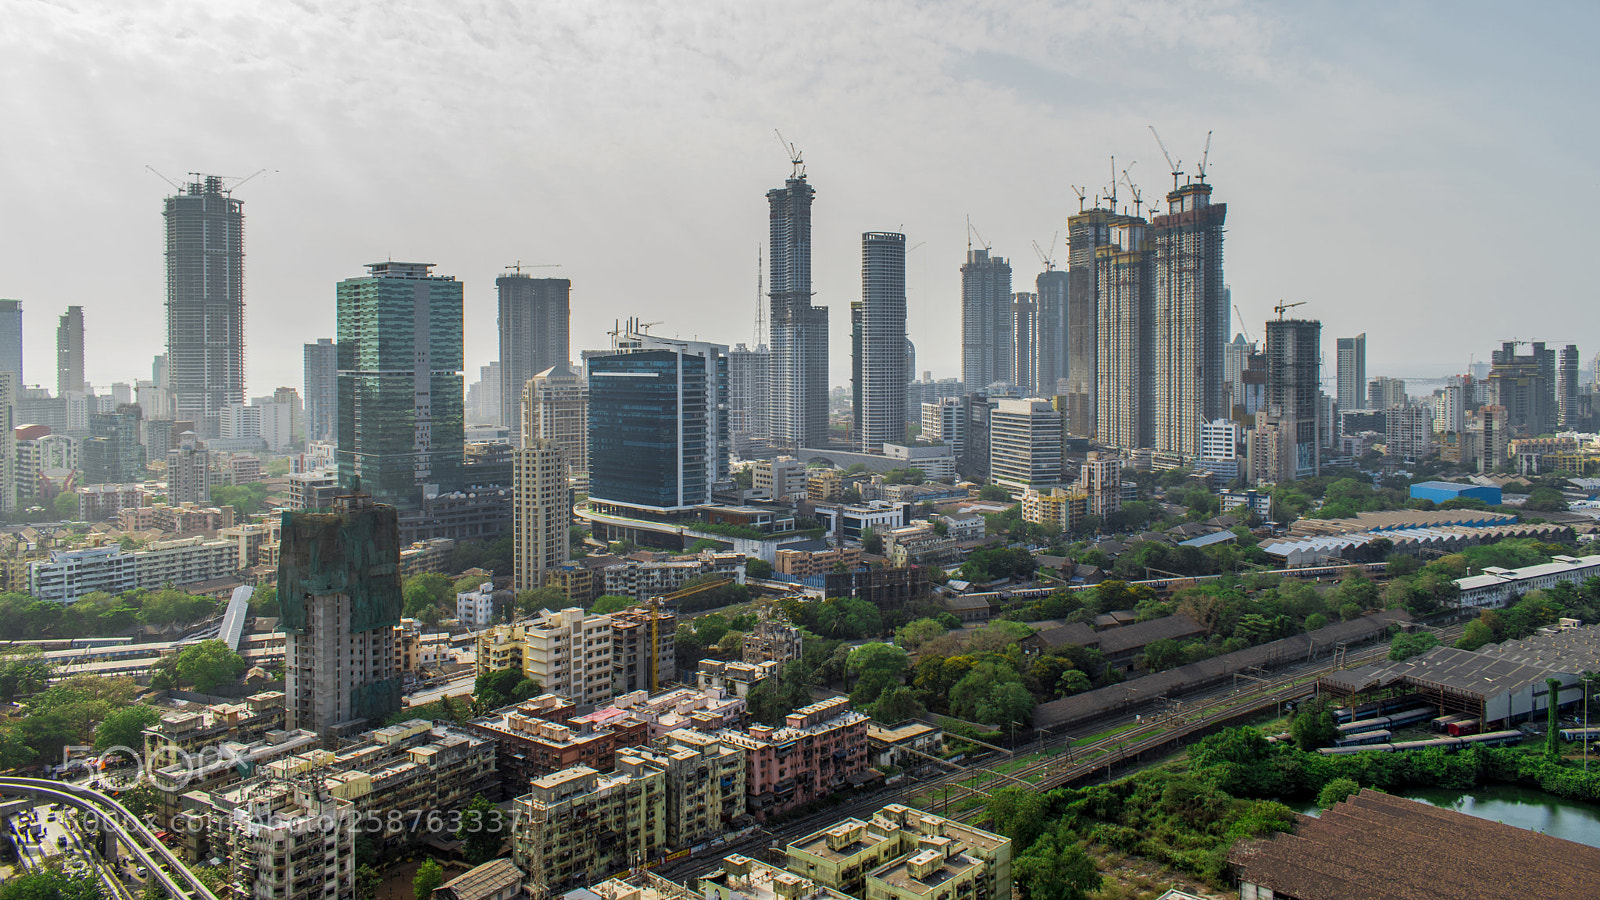 Nikon D5600 sample photo. 004 cityscapes from mumbai photography